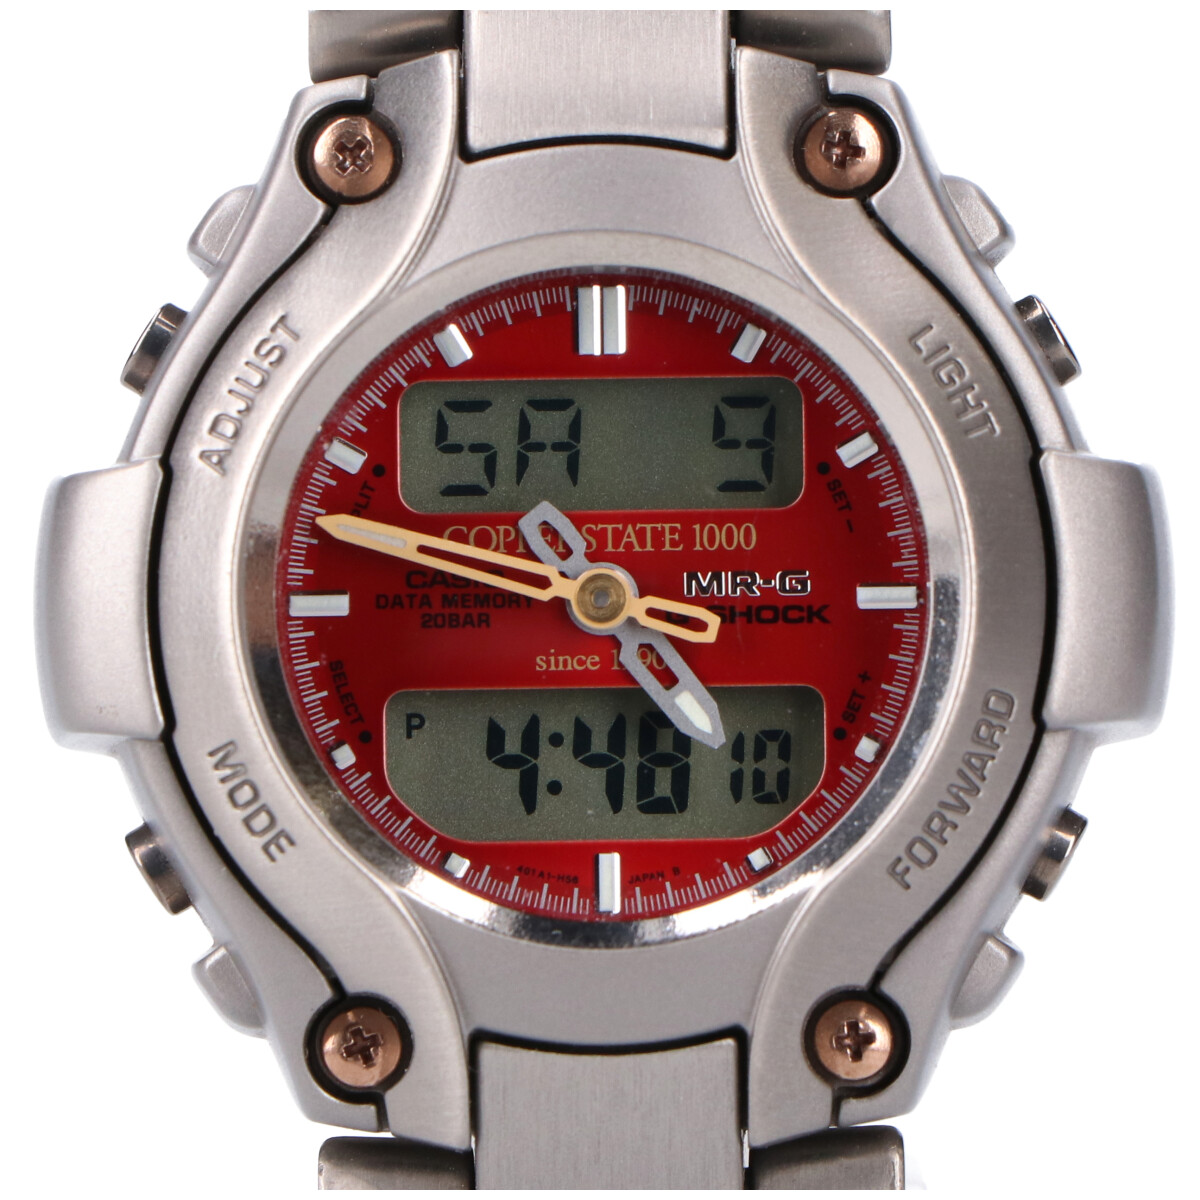 ジーショックのシルバー MRG-130TC チタン MR-Gシリーズ クーパーステイト デジアナ腕時計の買取実績です。